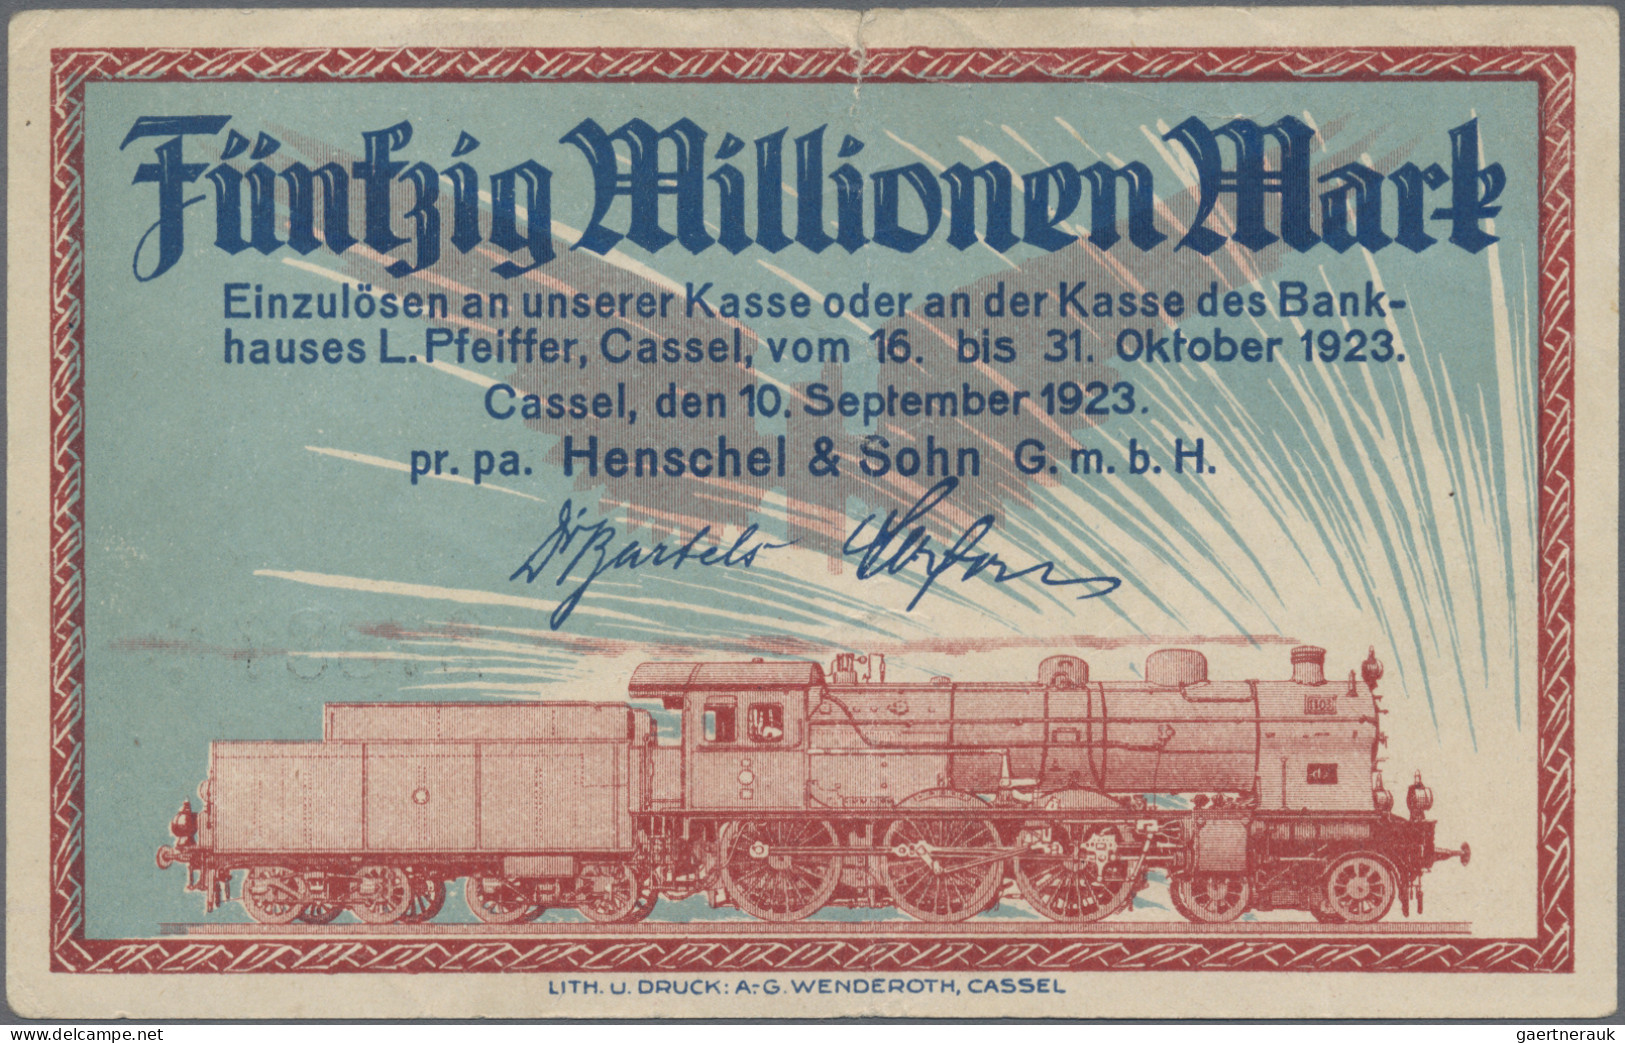 Deutschland - Deutsches Reich bis 1945: Lot mit etwa 100 Banknoten, dabei etwas